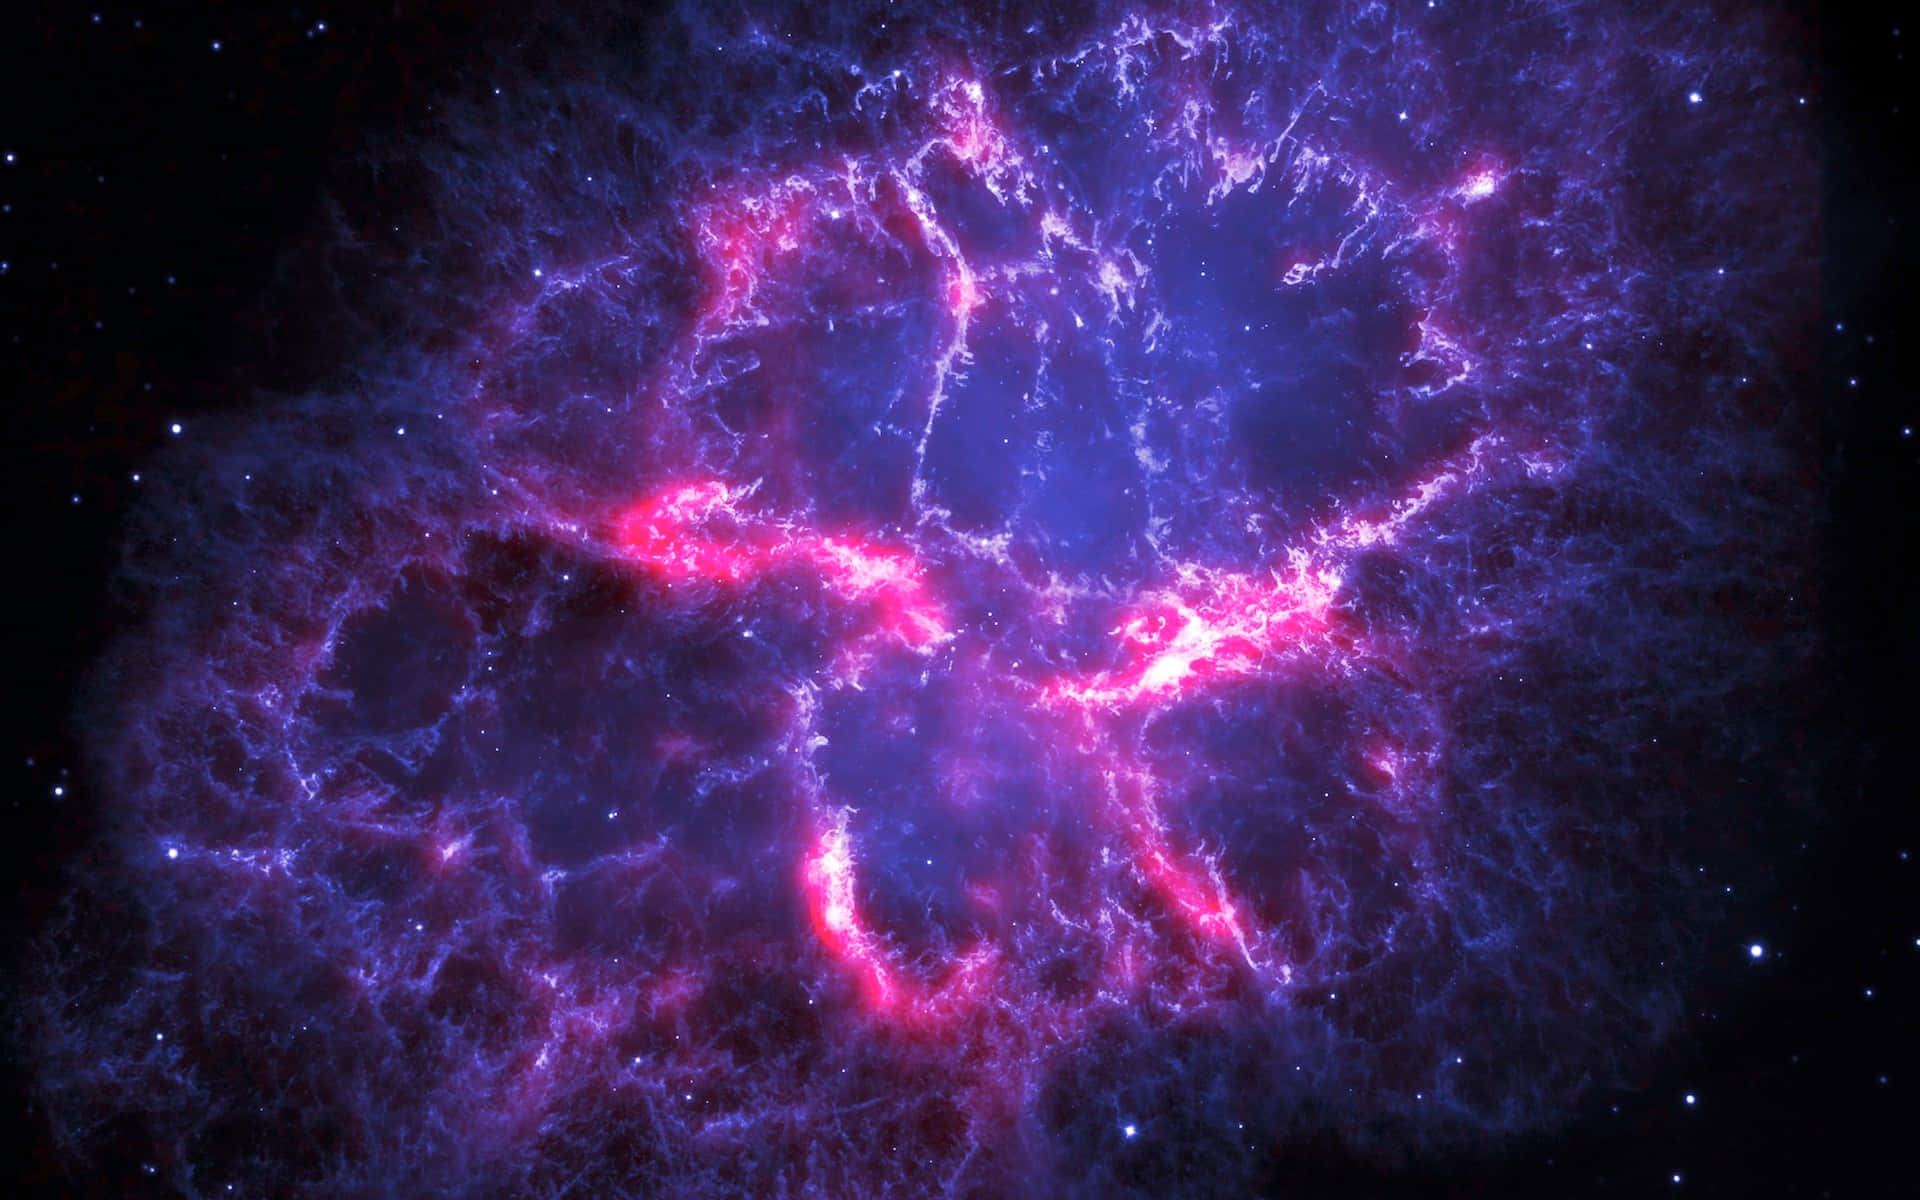 Unabrillante Y Hermosa Nebulosa Galáctica, Iluminada Por Su Propia Formación Estelar.